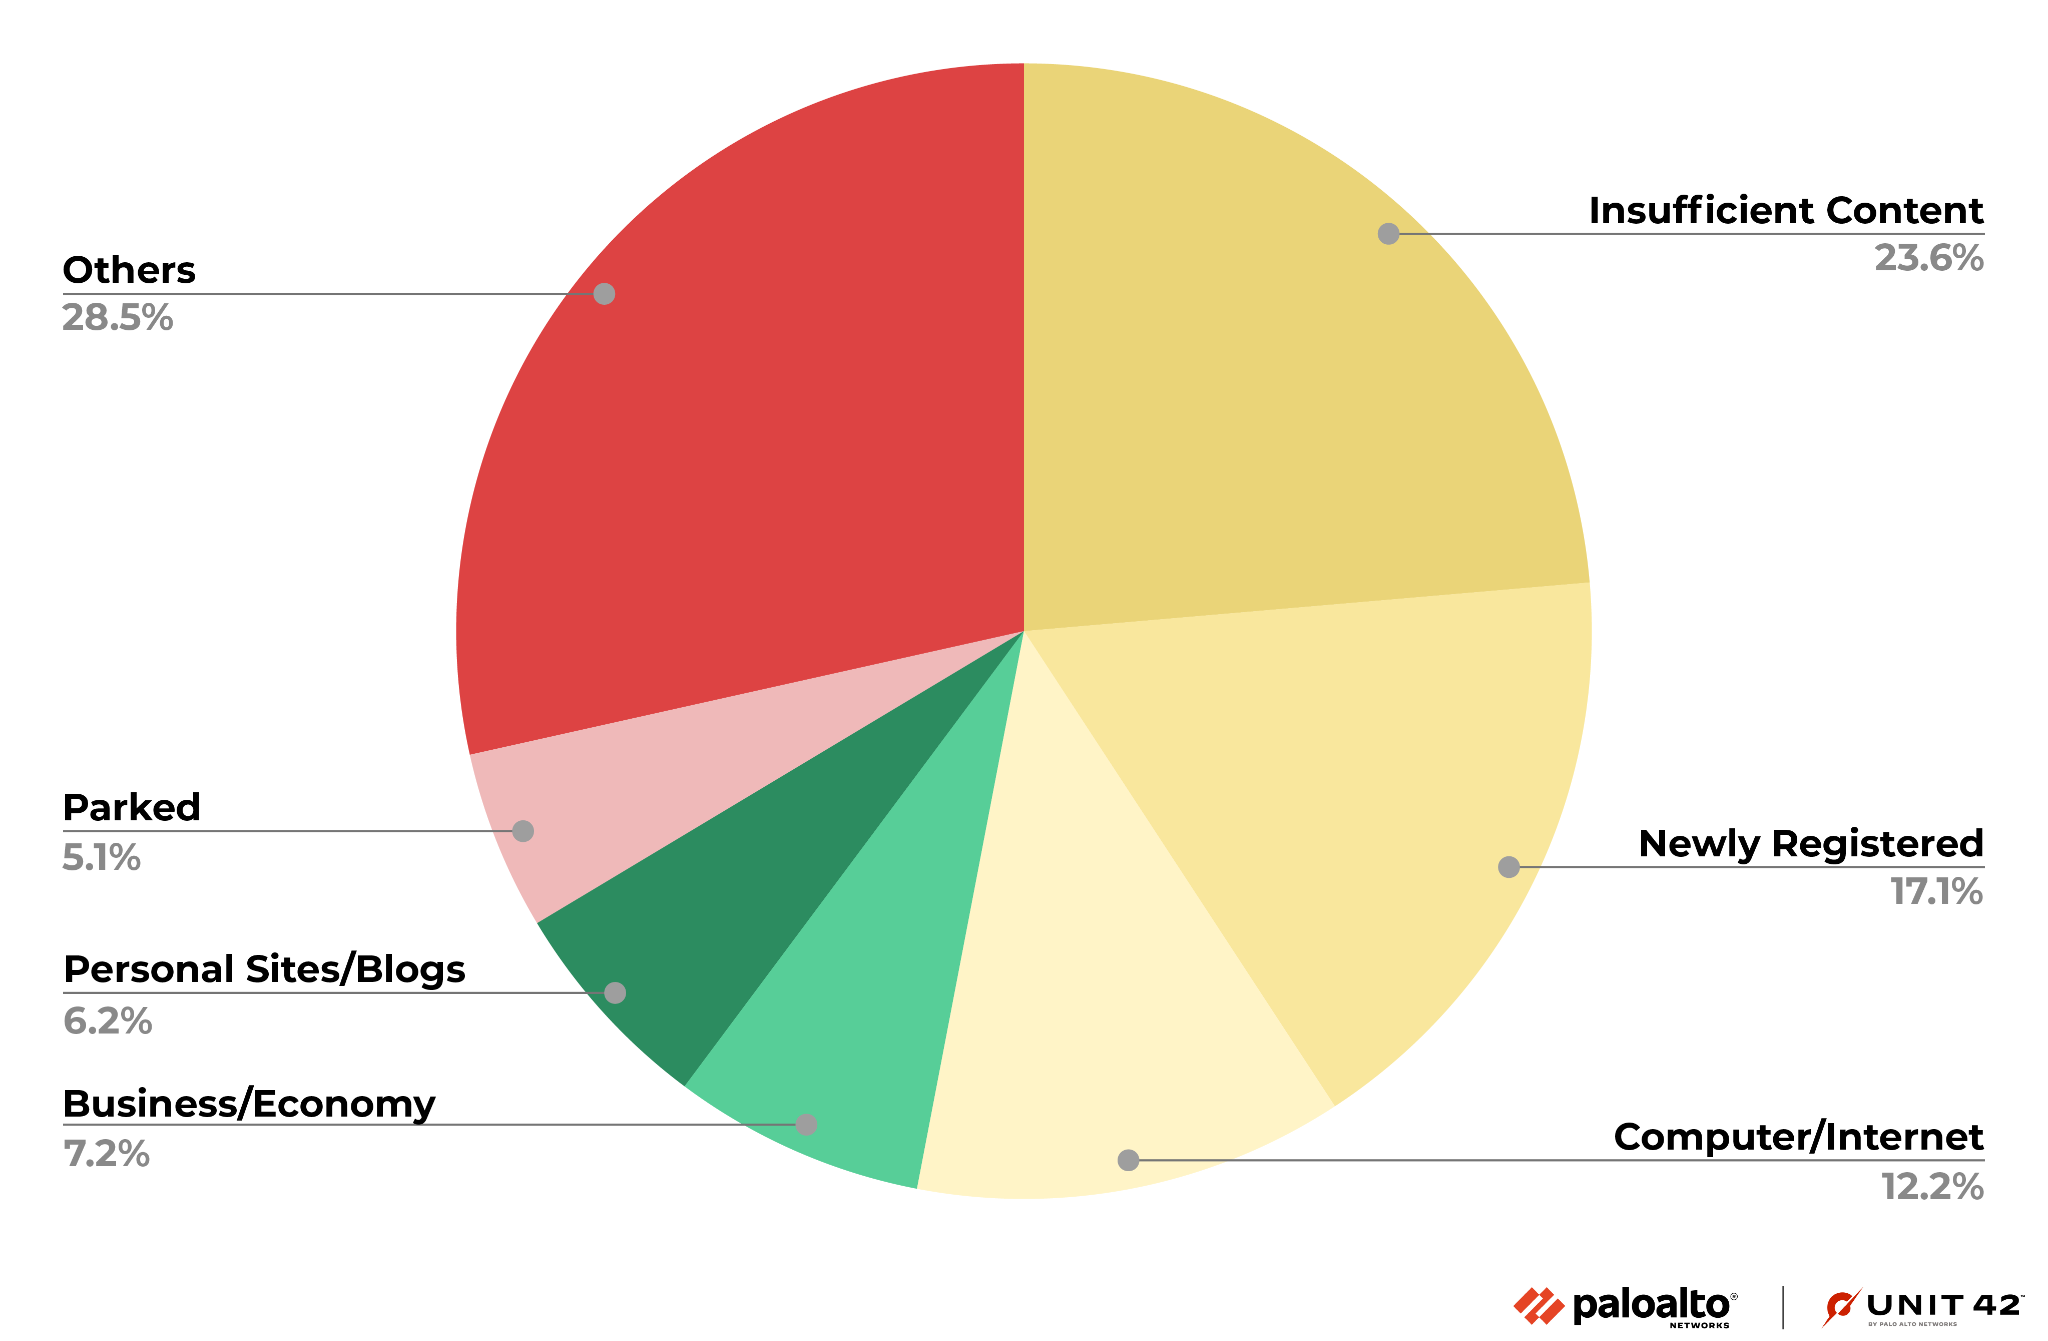 画像6は2022年7月から12月にかけて悪性と判定される前のURLのカテゴリーを円グラフにしたものです。もっとも多いのは「Others (その他)」で28.5％、次いで「Insufficient Content (コンテンツ不足)」で23.6％、そして「Newly Registered Domain (新規登録ドメイン)」で17.1％の順となっています。第4位は「コンピューター/インターネット」で12.2％でした。